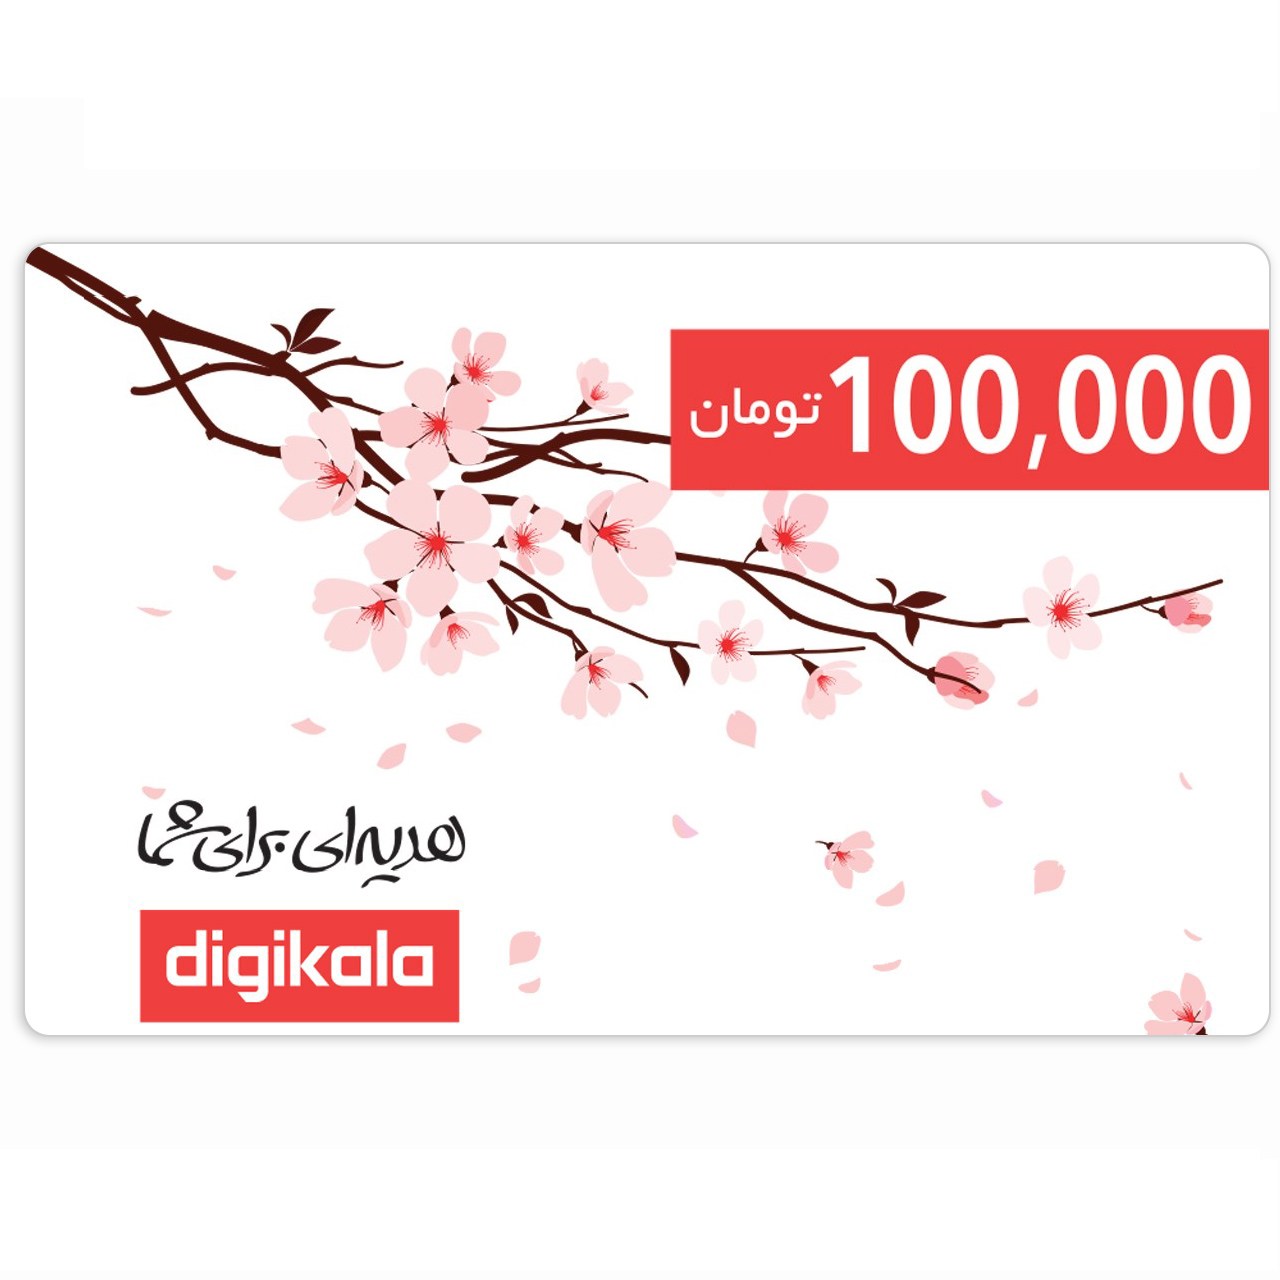 کارت هدیه دیجی کالا به ارزش 100.000 تومان طرح شکوفه